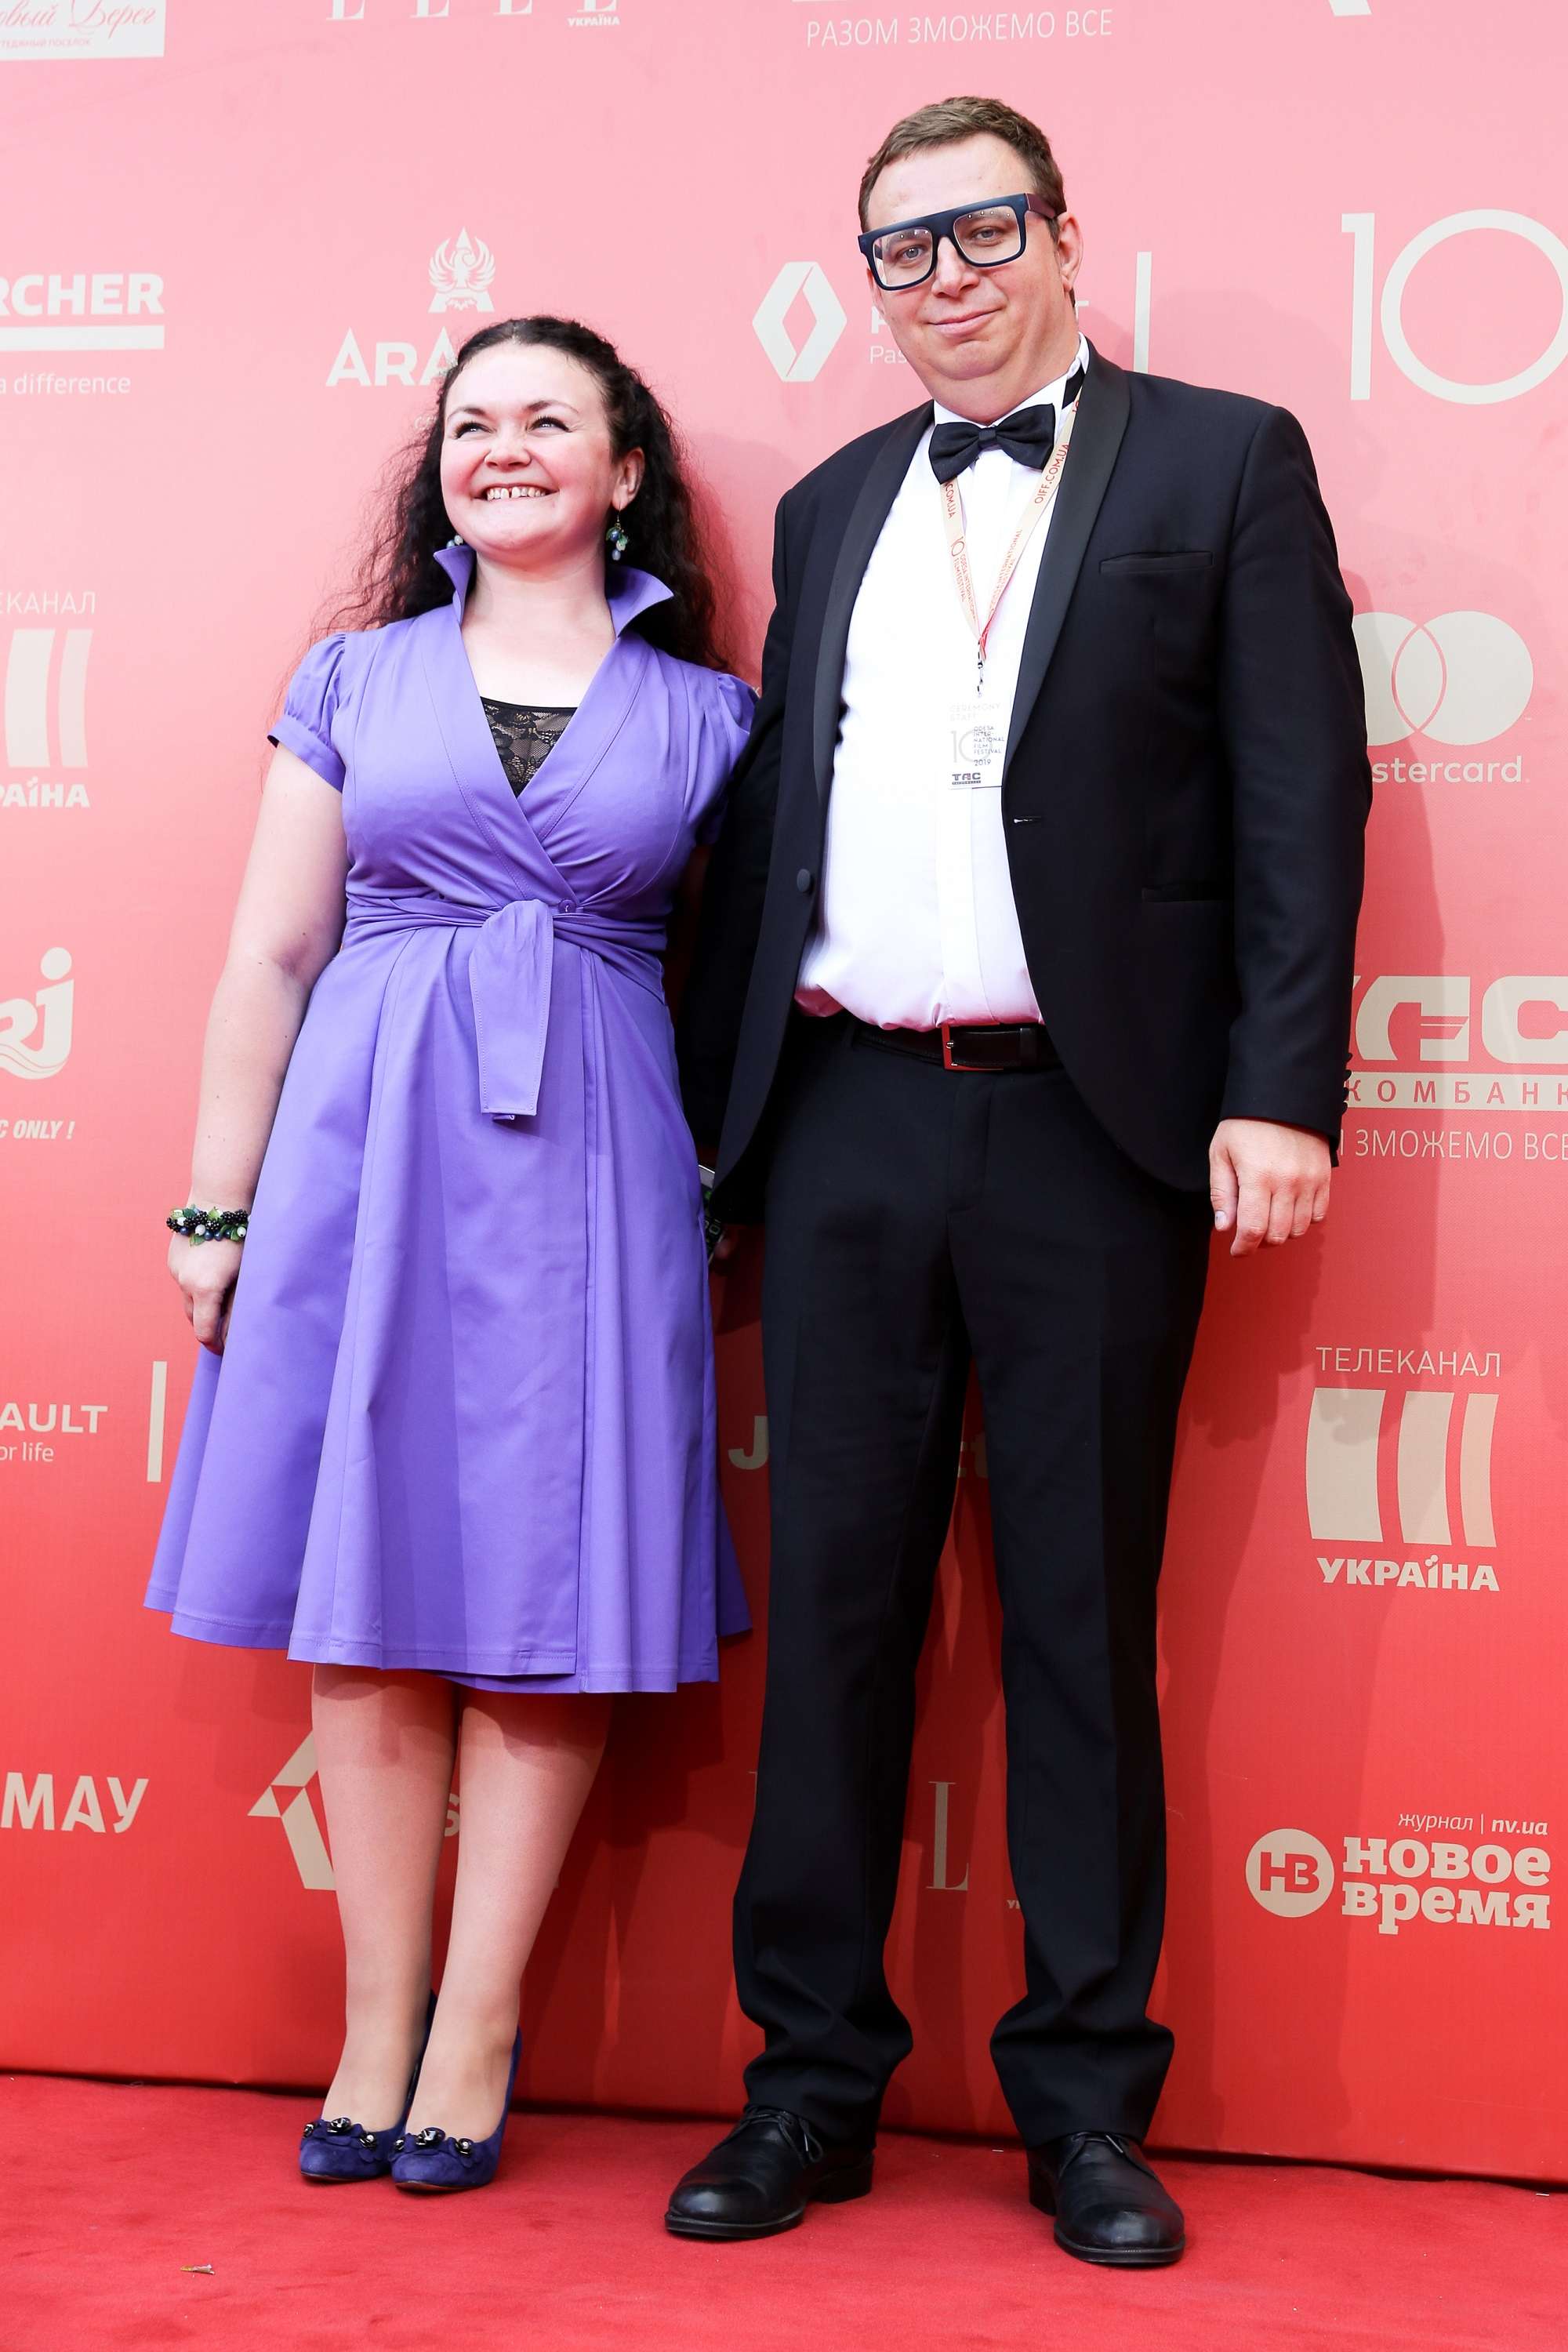 Красная дорожка Одесского кинофестиваля 2019: самые нелепые образы гостей - фото 442027